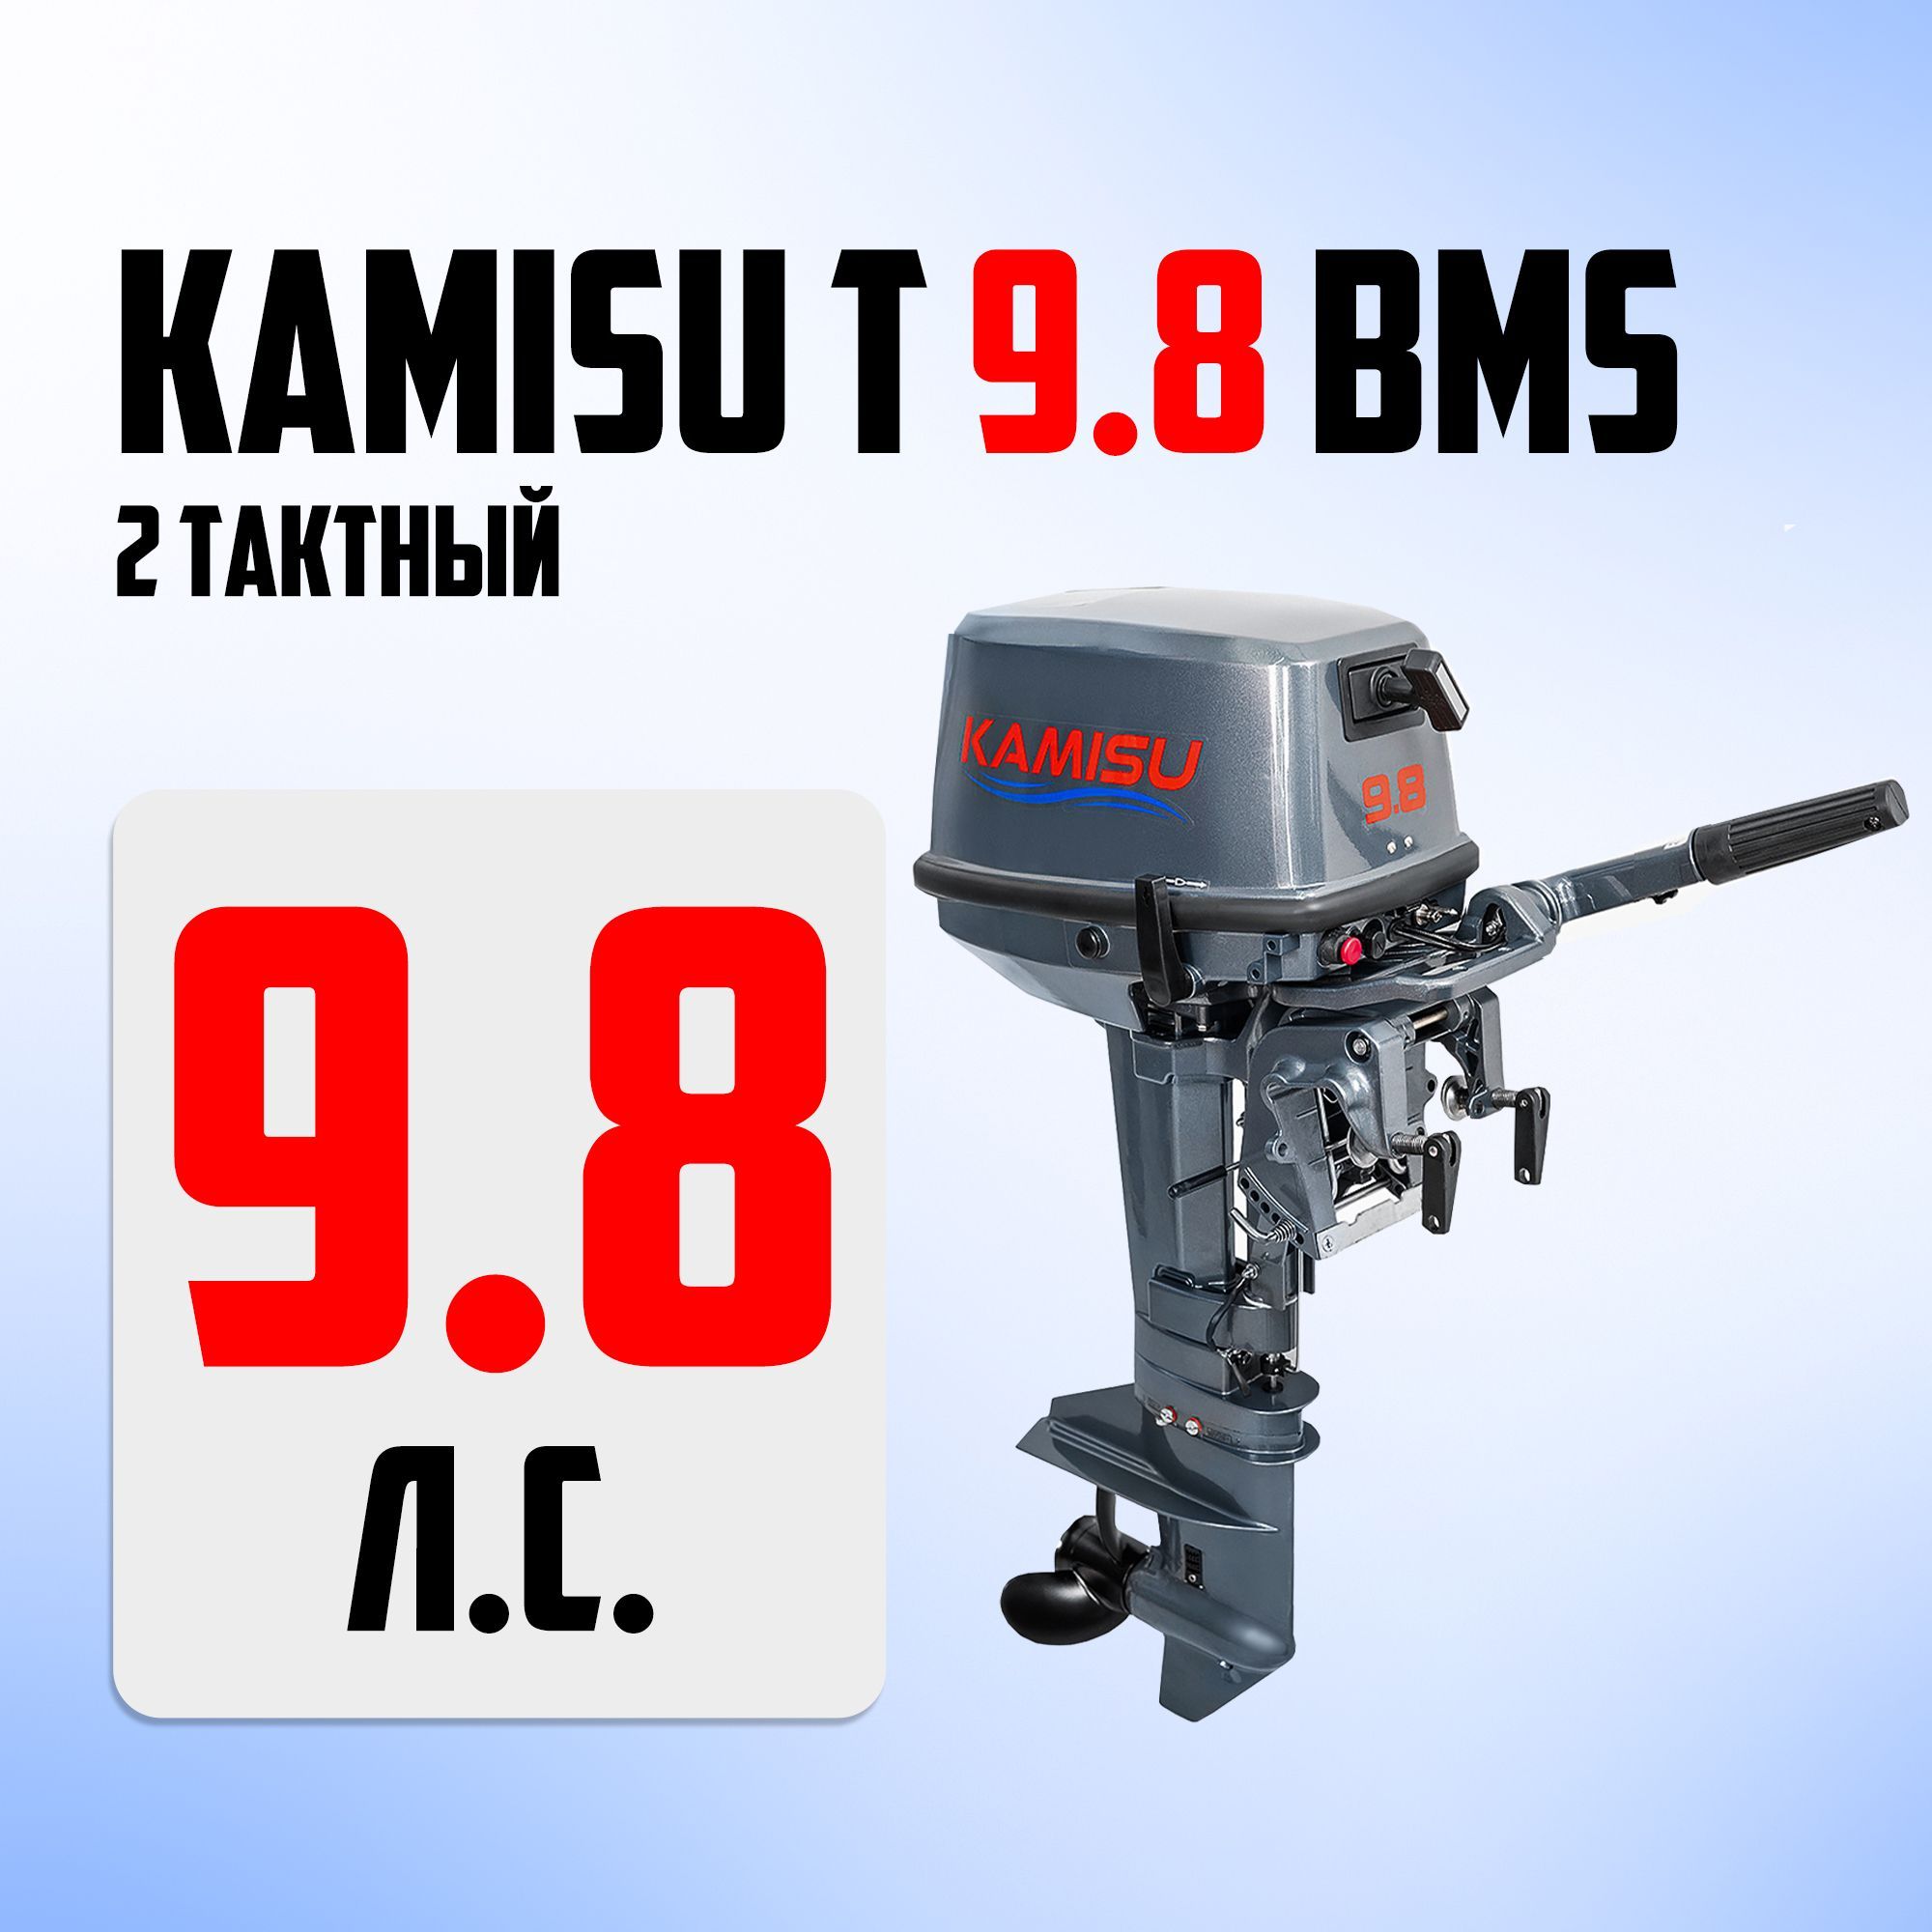 Kamisu лодочные моторы производитель. Yamabisi 30. Yamabisi t5bms PNG. Лодочный мотор камису купить